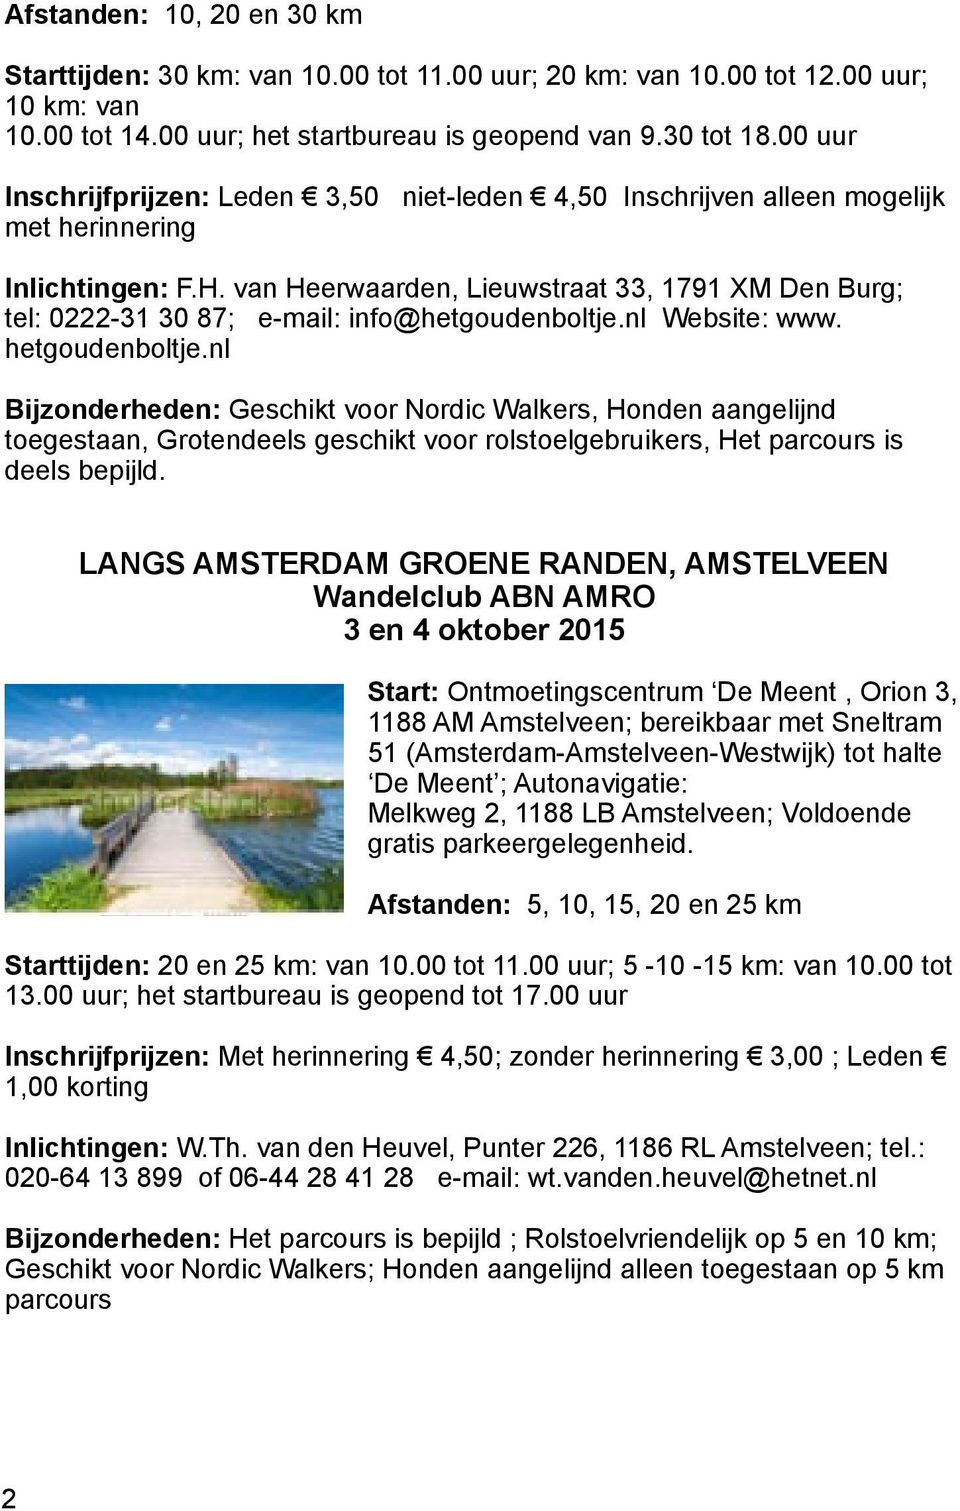 van Heerwaarden, Lieuwstraat 33, 1791 XM Den Burg; tel: 0222-31 30 87; e-mail: info@hetgoudenboltje.nl Website: www. hetgoudenboltje.